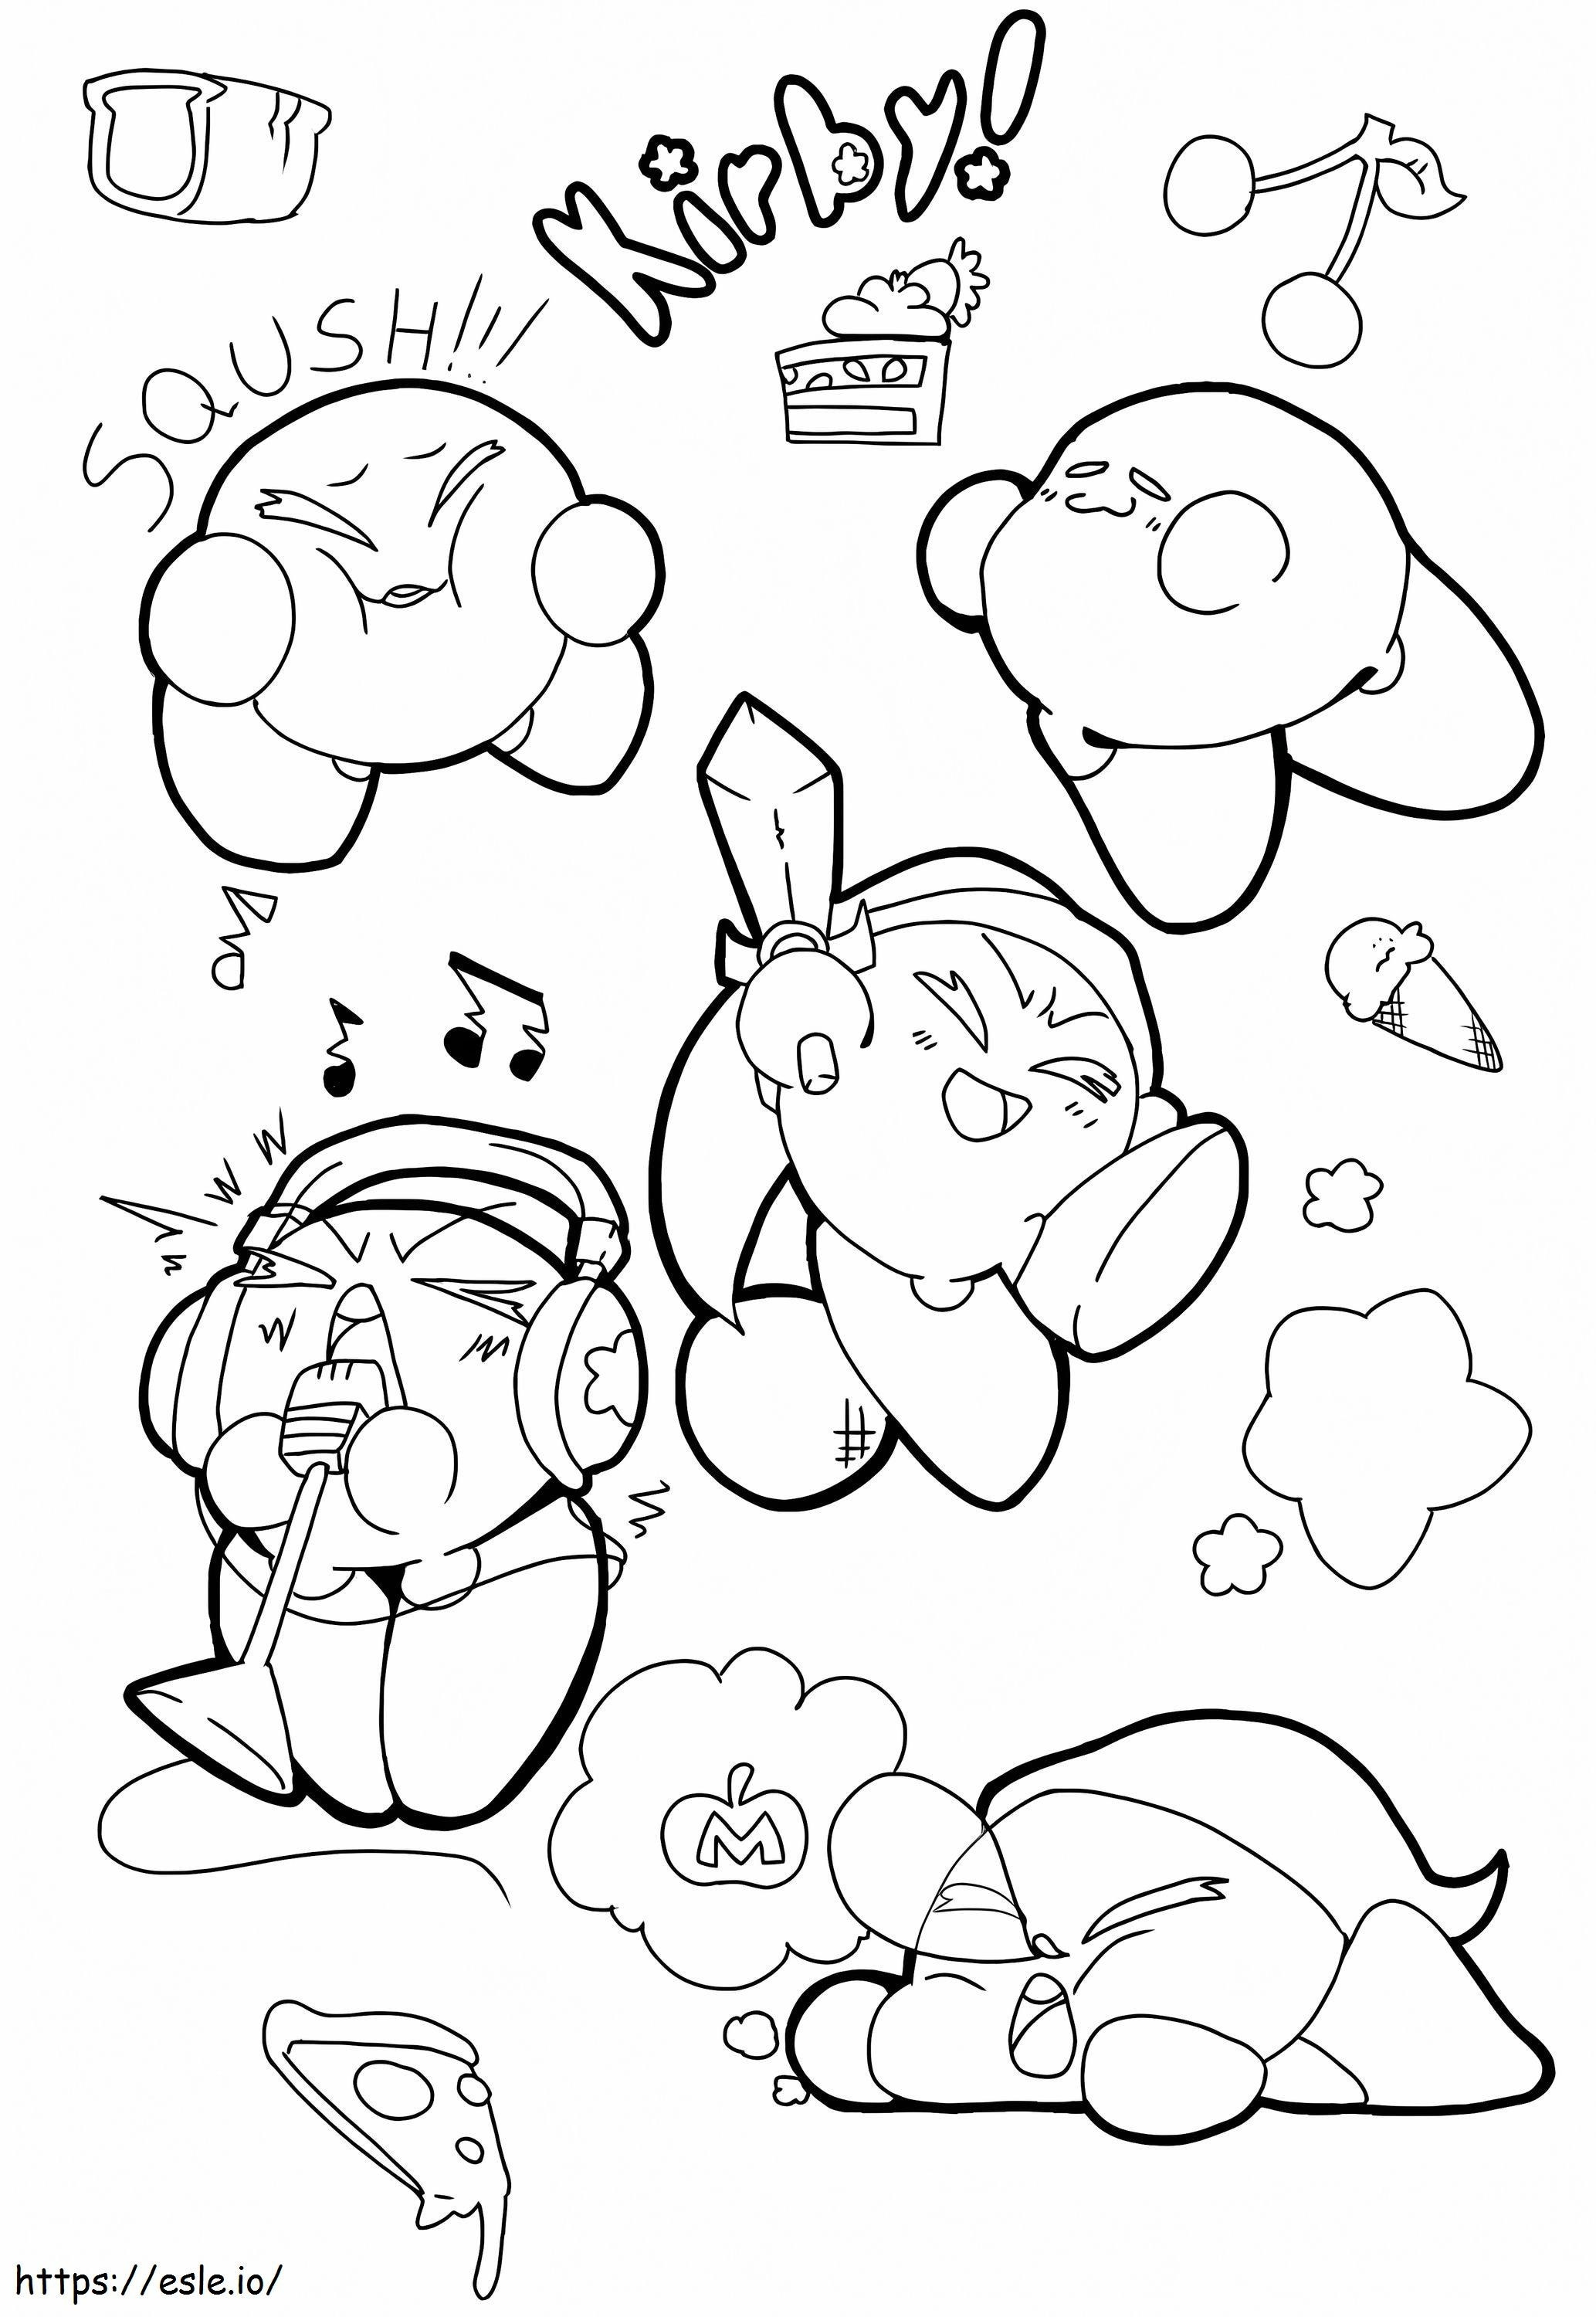 Kirby Basico da colorare